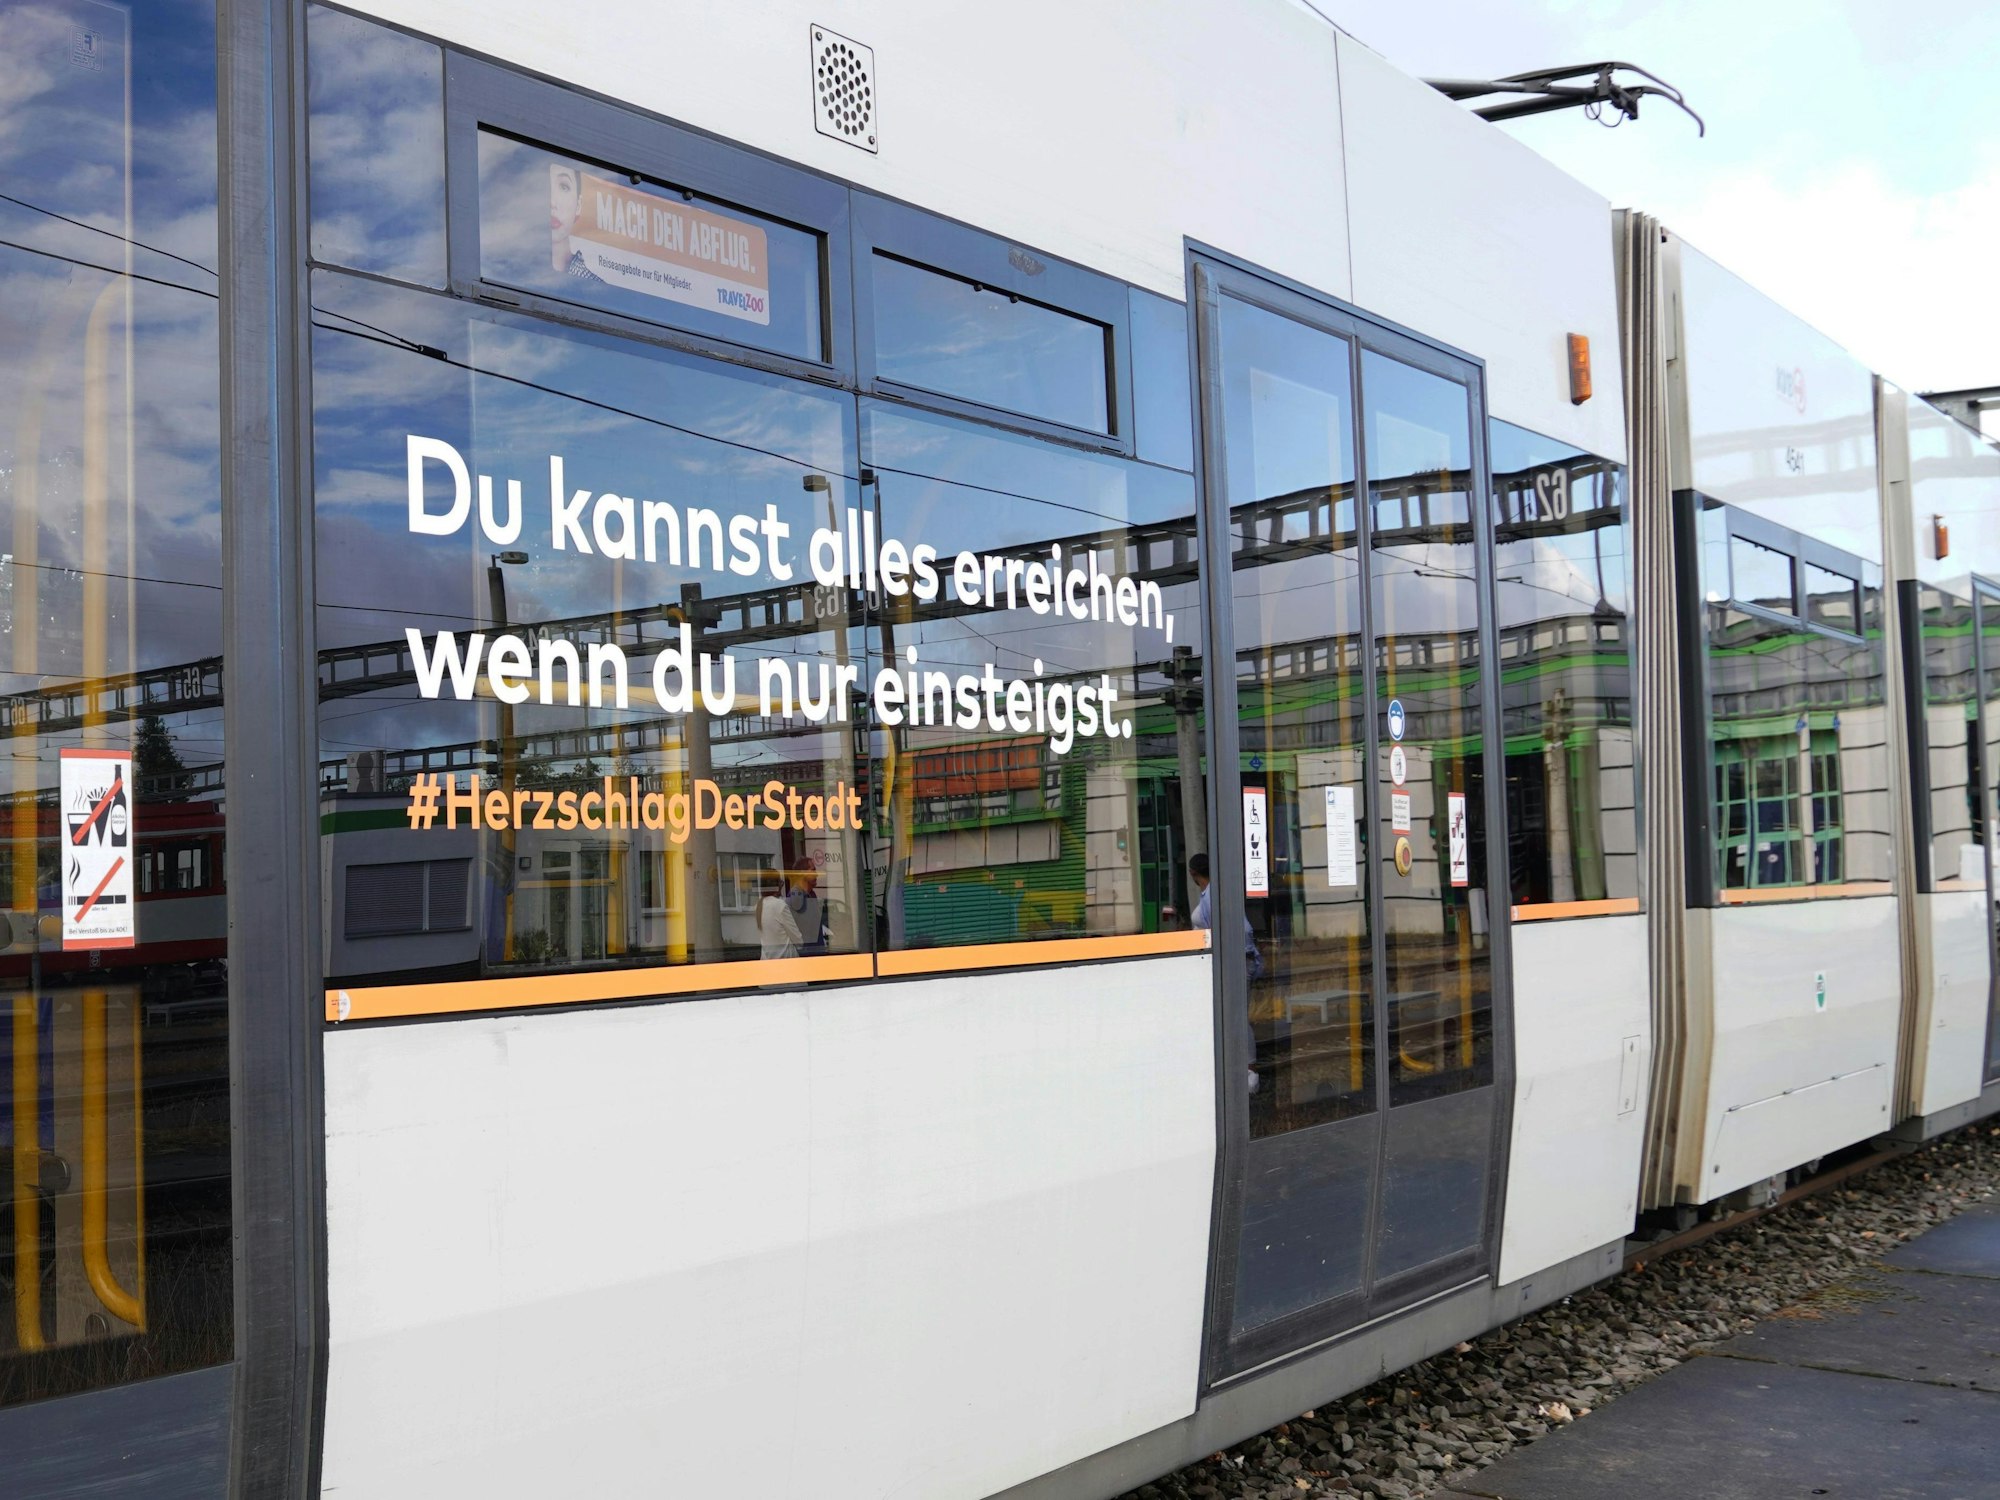 Viele KVB-Bahnen in Köln fahren nun mit humorvolle Sprüchen durch die Stadt.